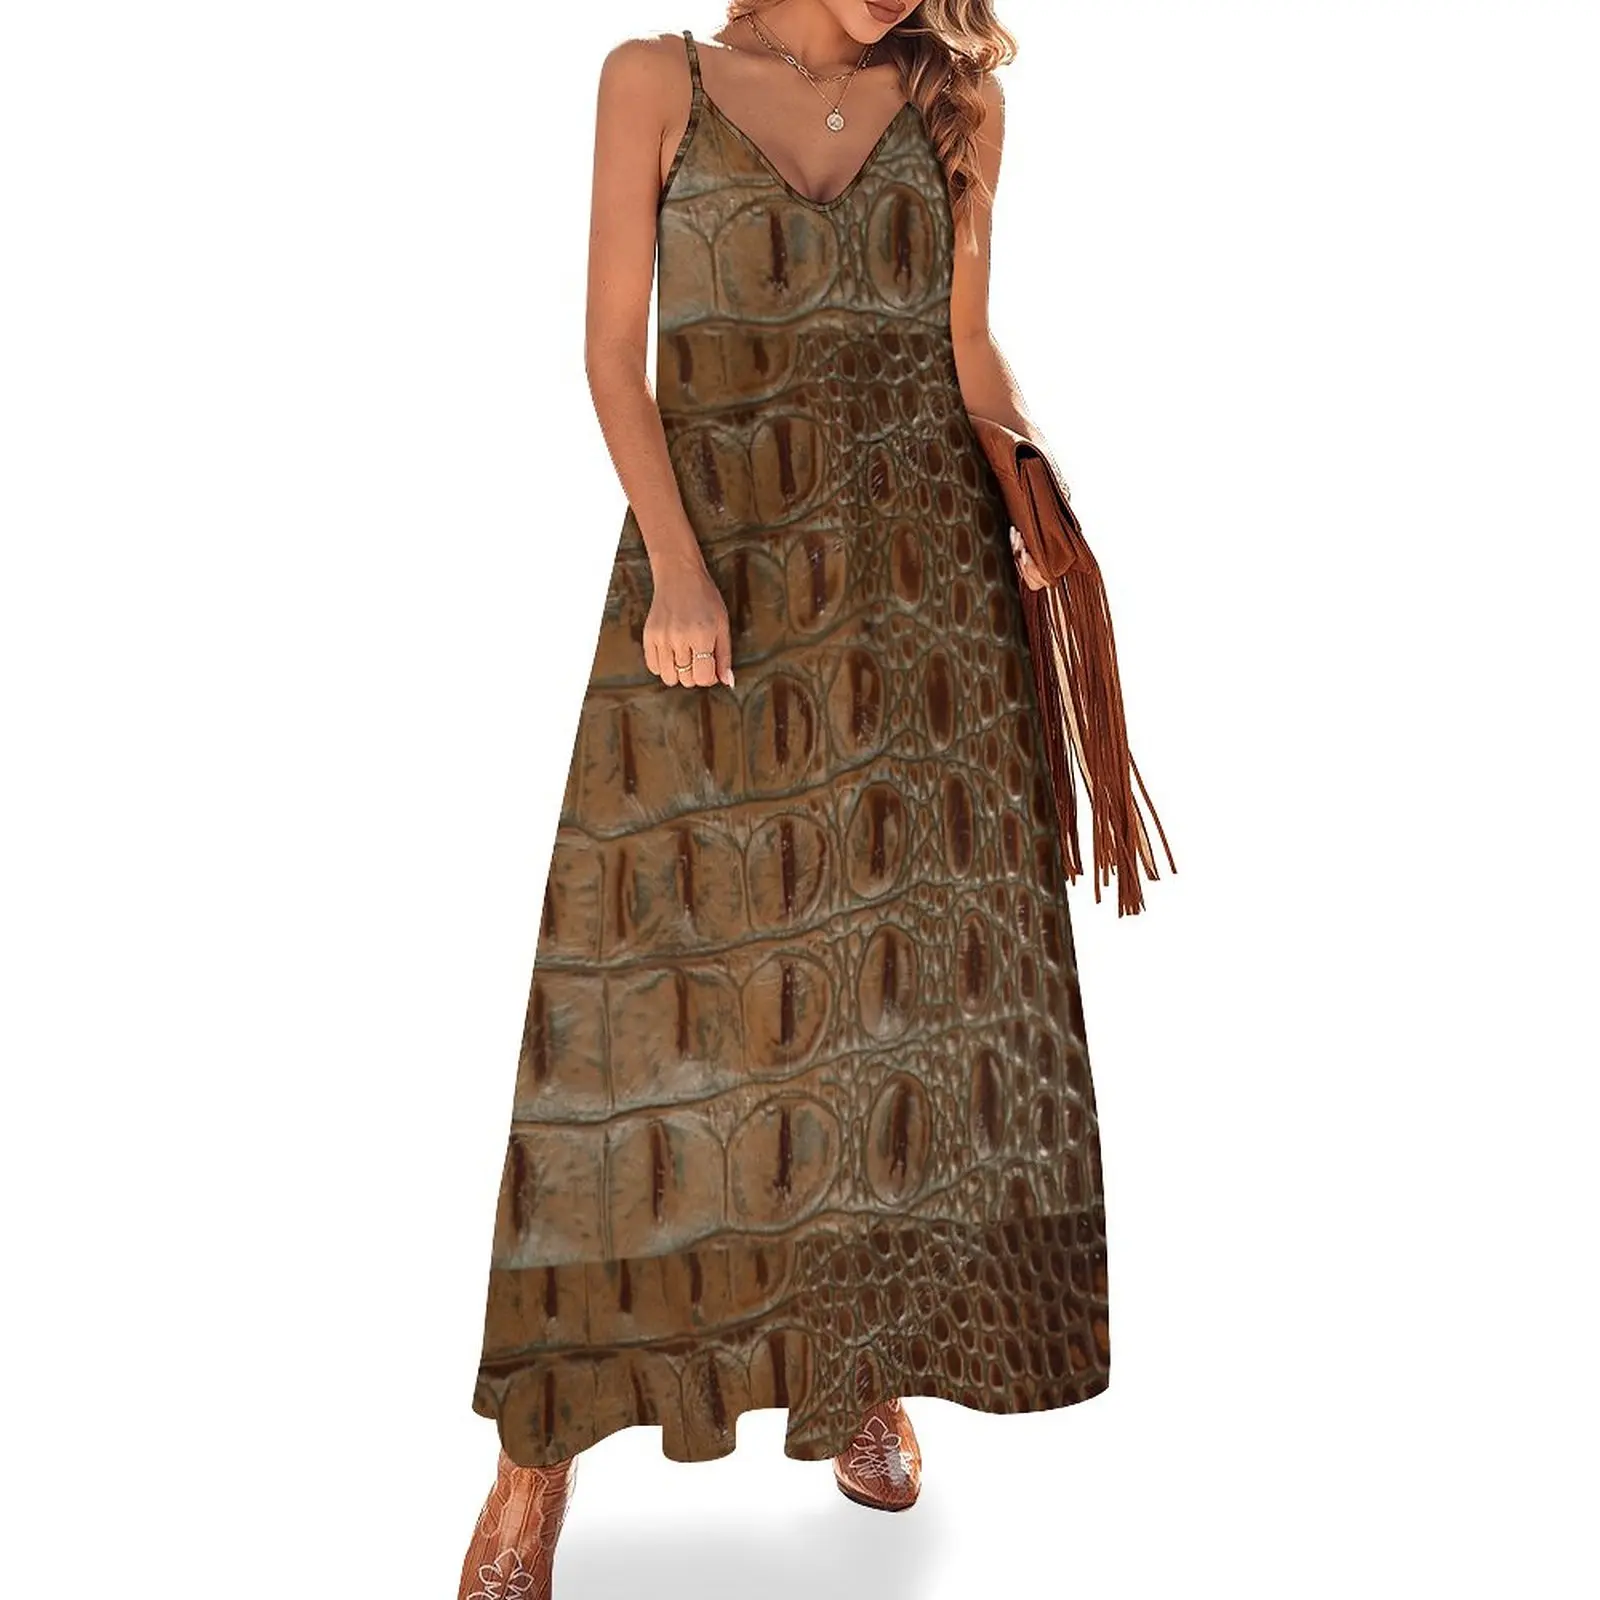 

Платье без рукавов из искусственной крокодиловой кожи с фото 2D, женское летнее платье, платья для выпускного вечера, коктейльные платья